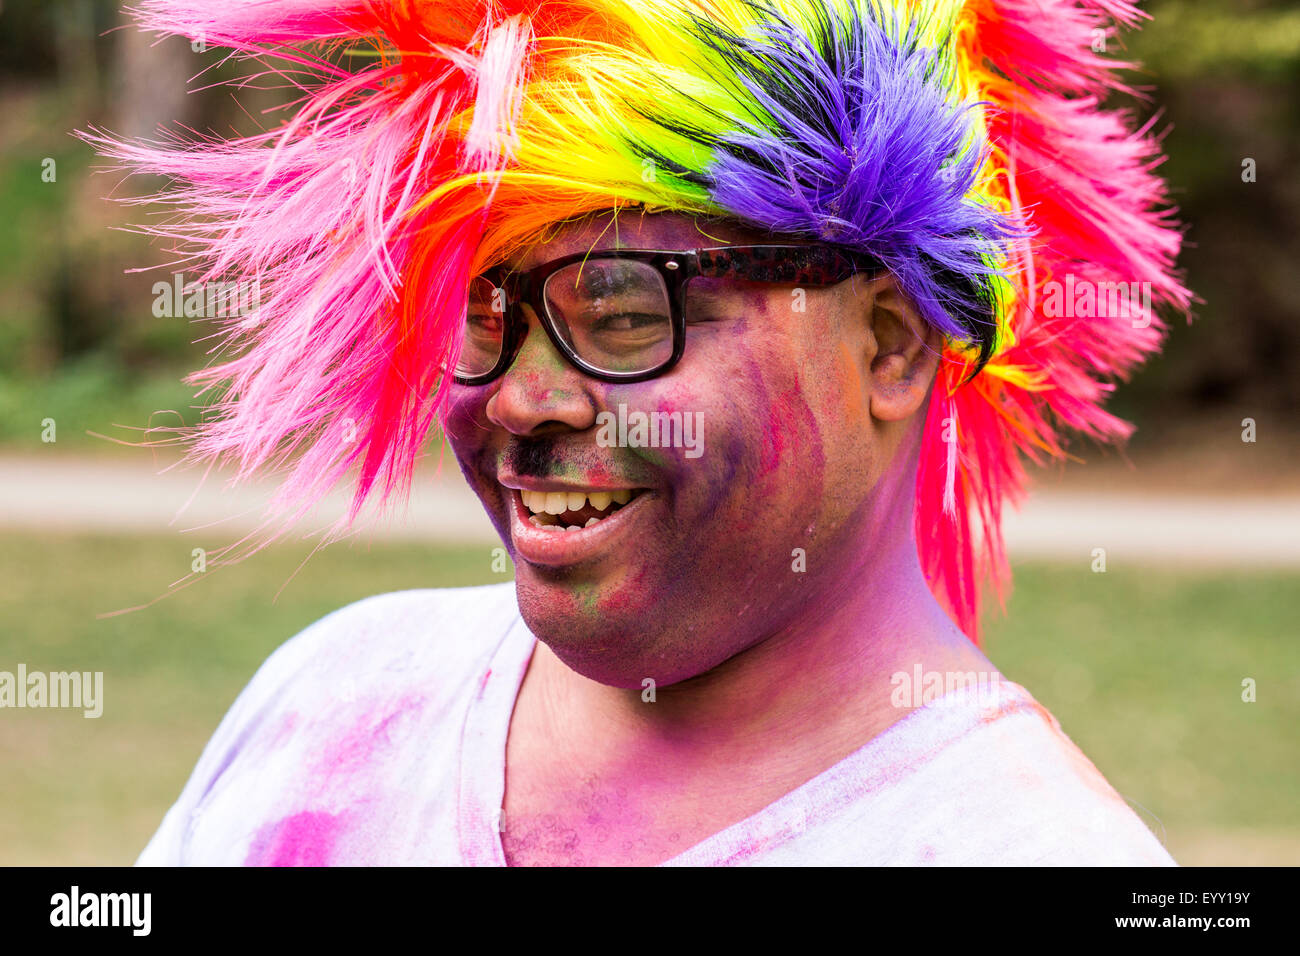 Lächelnder Mann bedeckt in Pigmentpulver tragen mehrfarbige Perücke Stockfoto